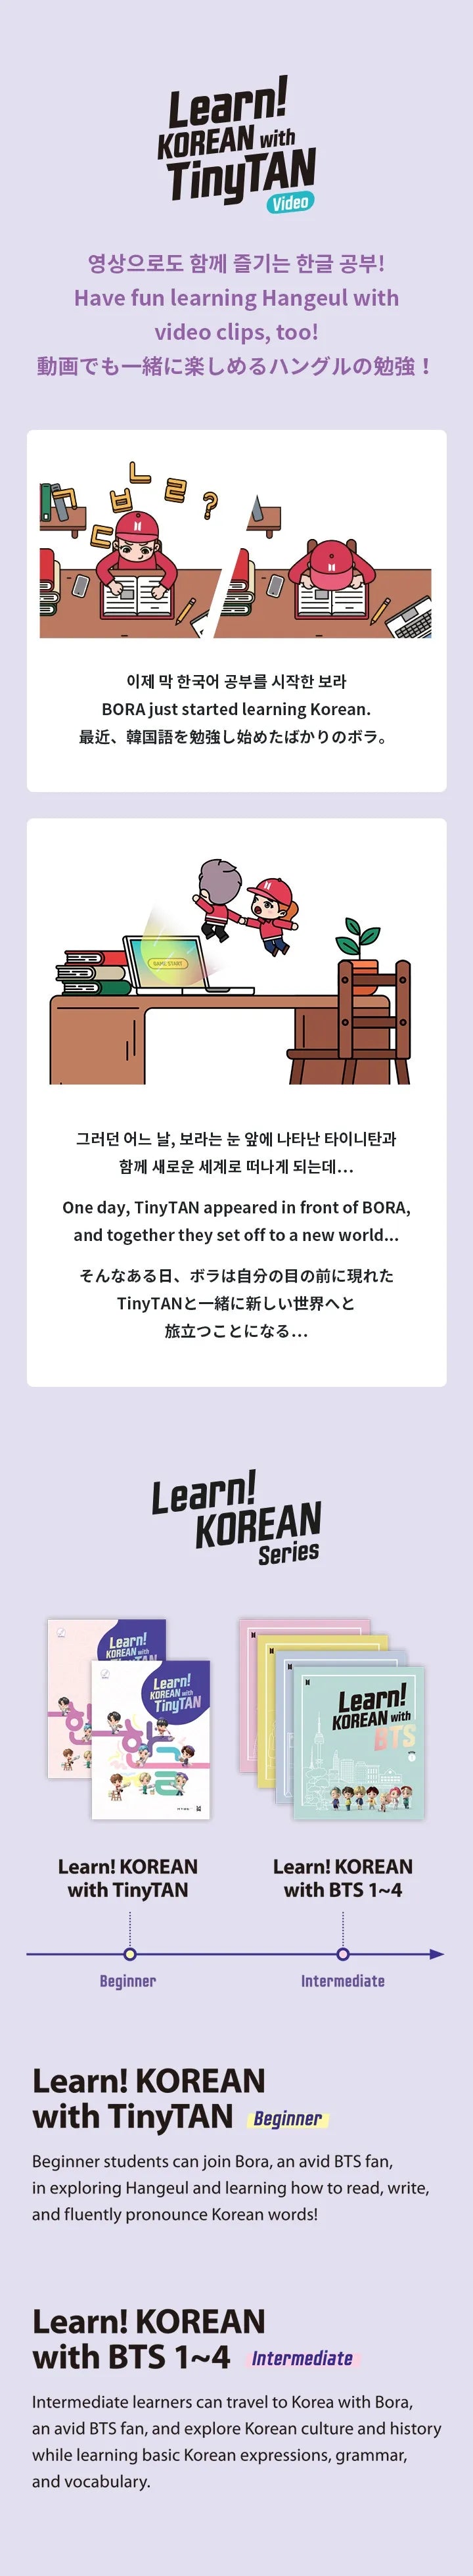 学ぶ！ TinyTANの韓国語